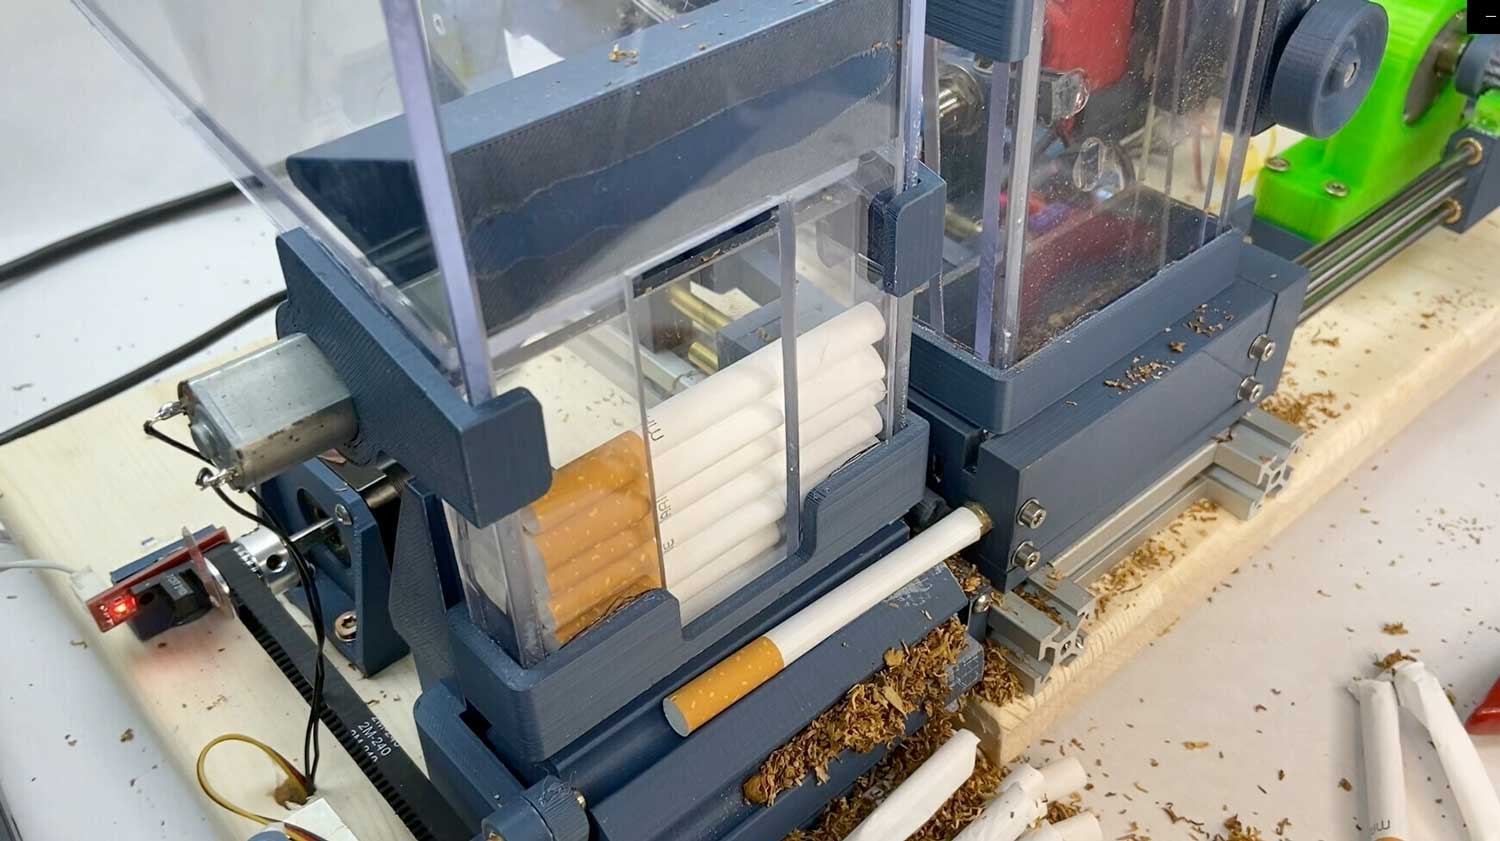 r entwickelt 3D-gedruckte Zigarettenstopfmaschine